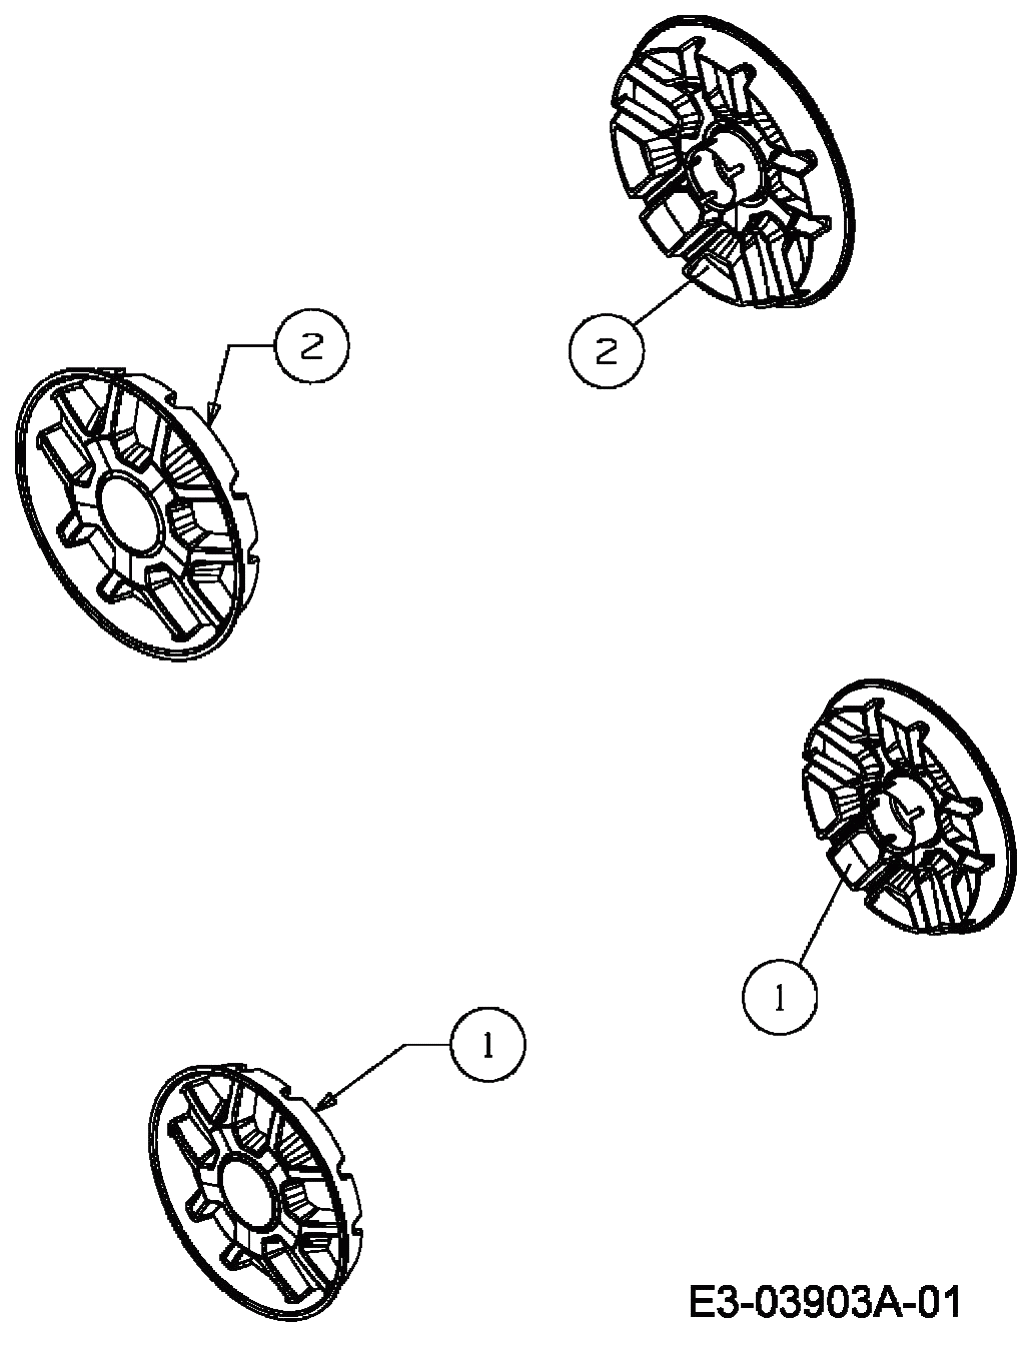 MTD Артикул 12EEJ58U600 (год выпуска 2009). Колесные колпаки